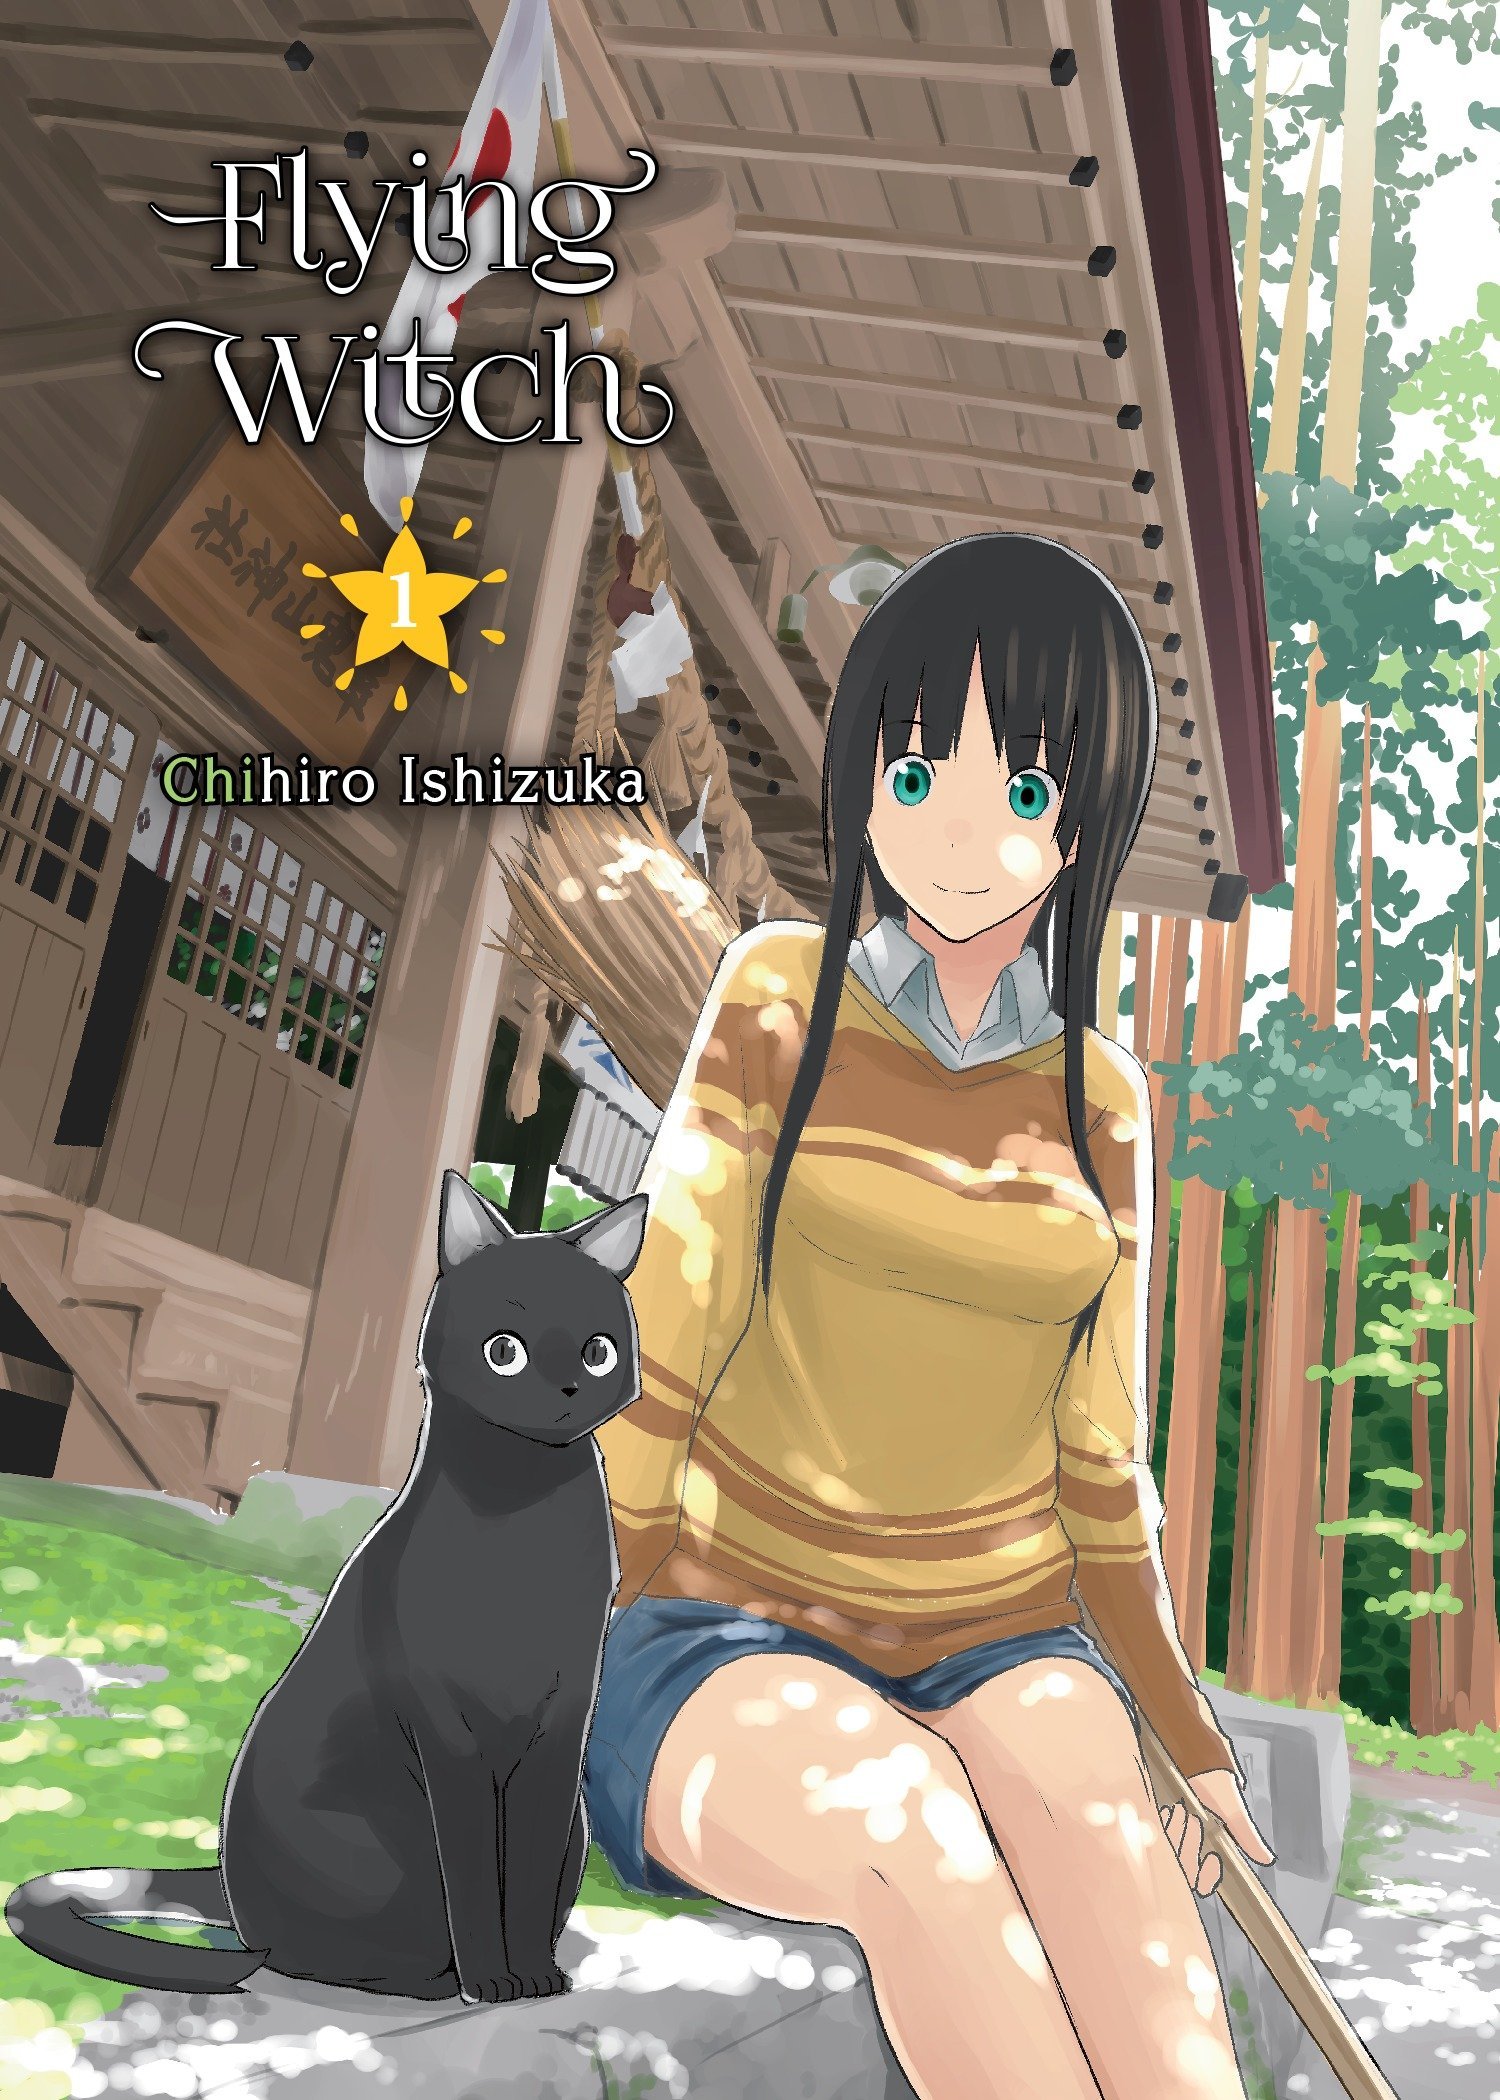 Flying Witch Manga Volume 1